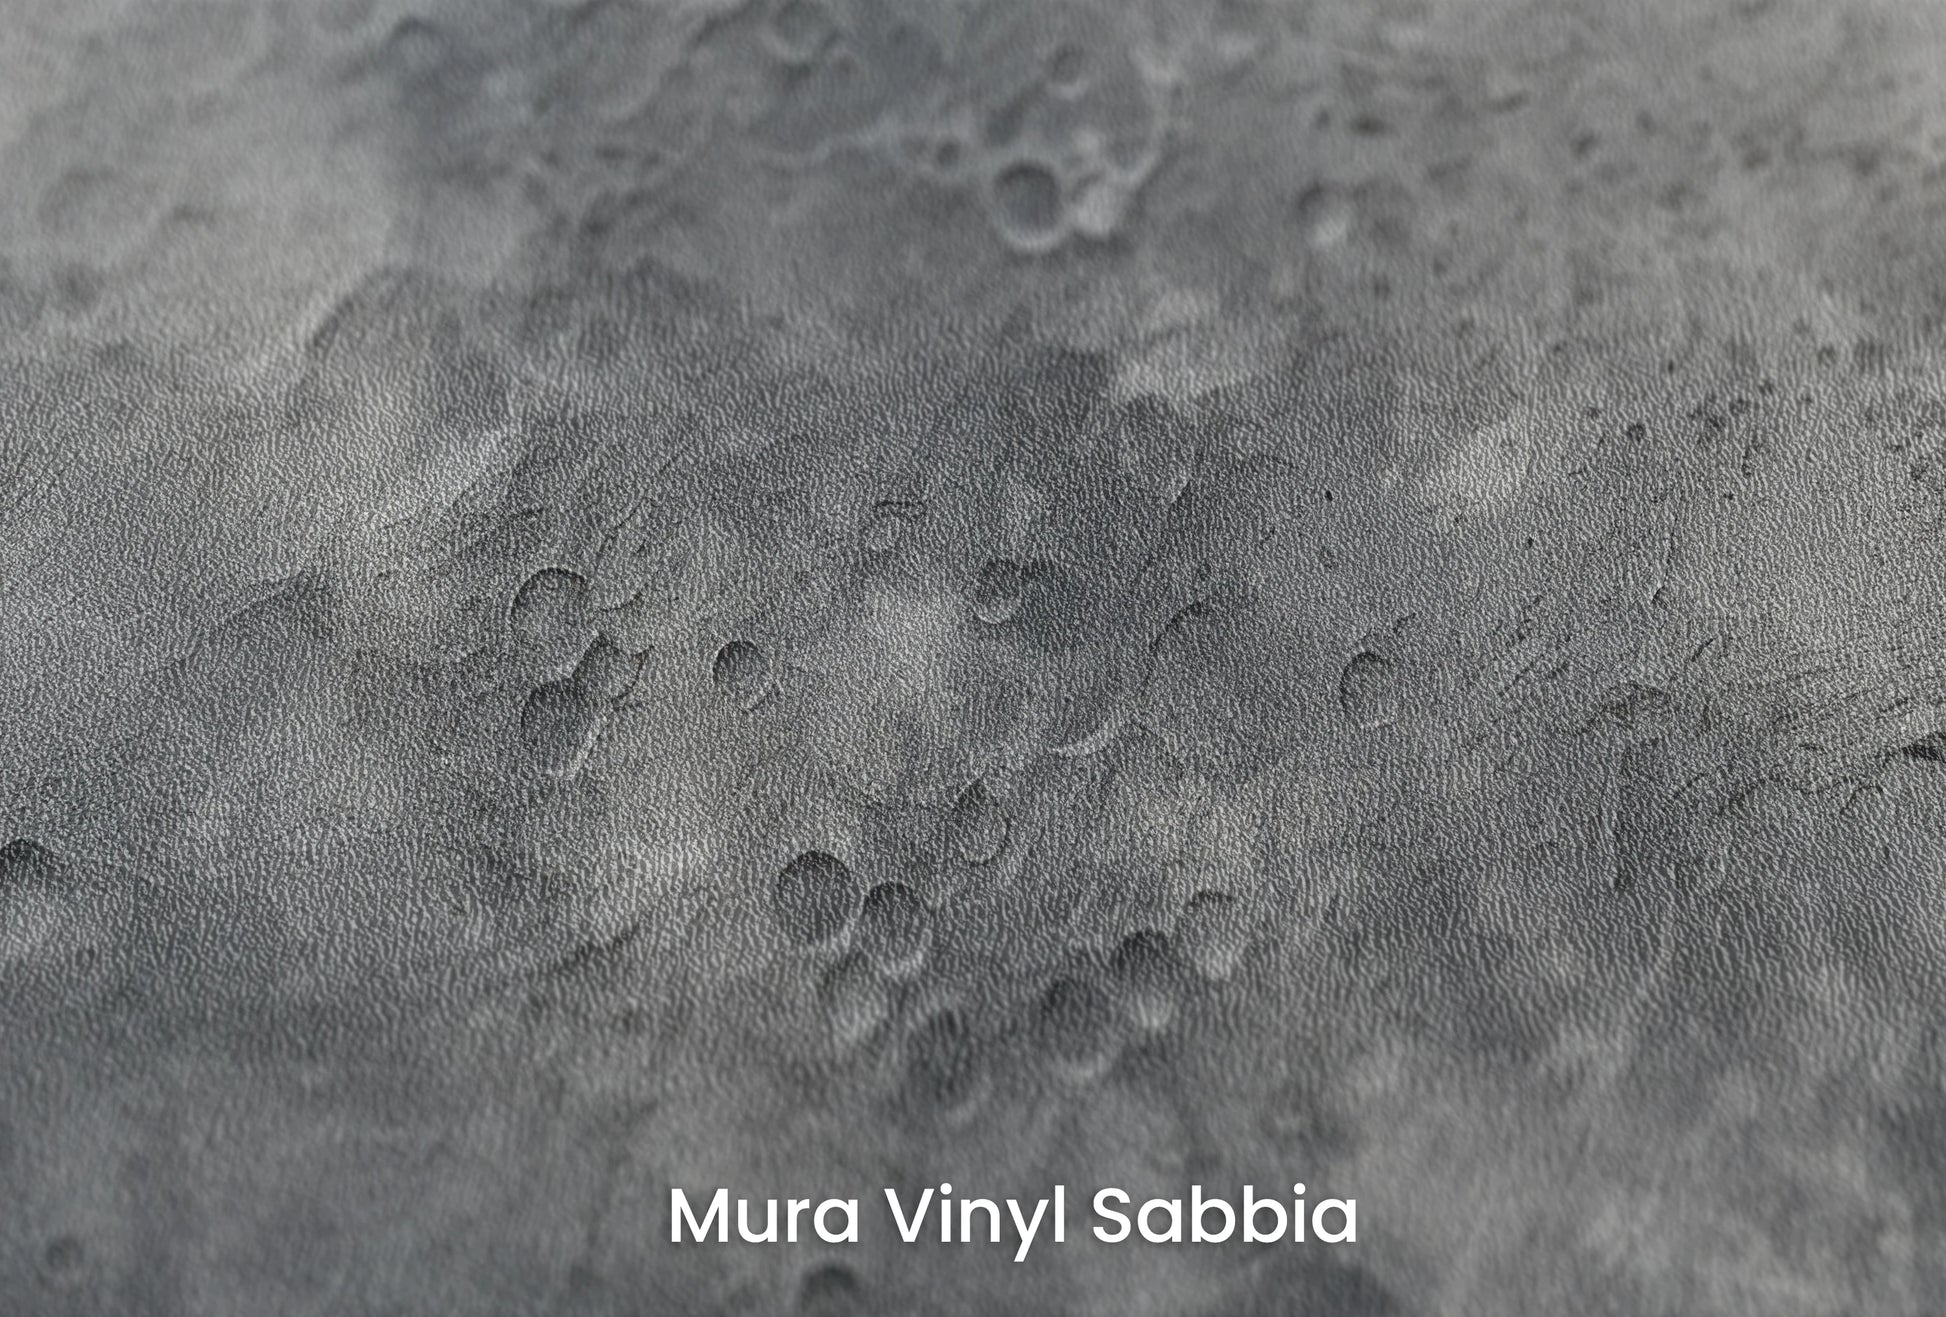 Zbliżenie na artystyczną fototapetę o nazwie Moon's Geography na podłożu Mura Vinyl Sabbia struktura grubego ziarna piasku.